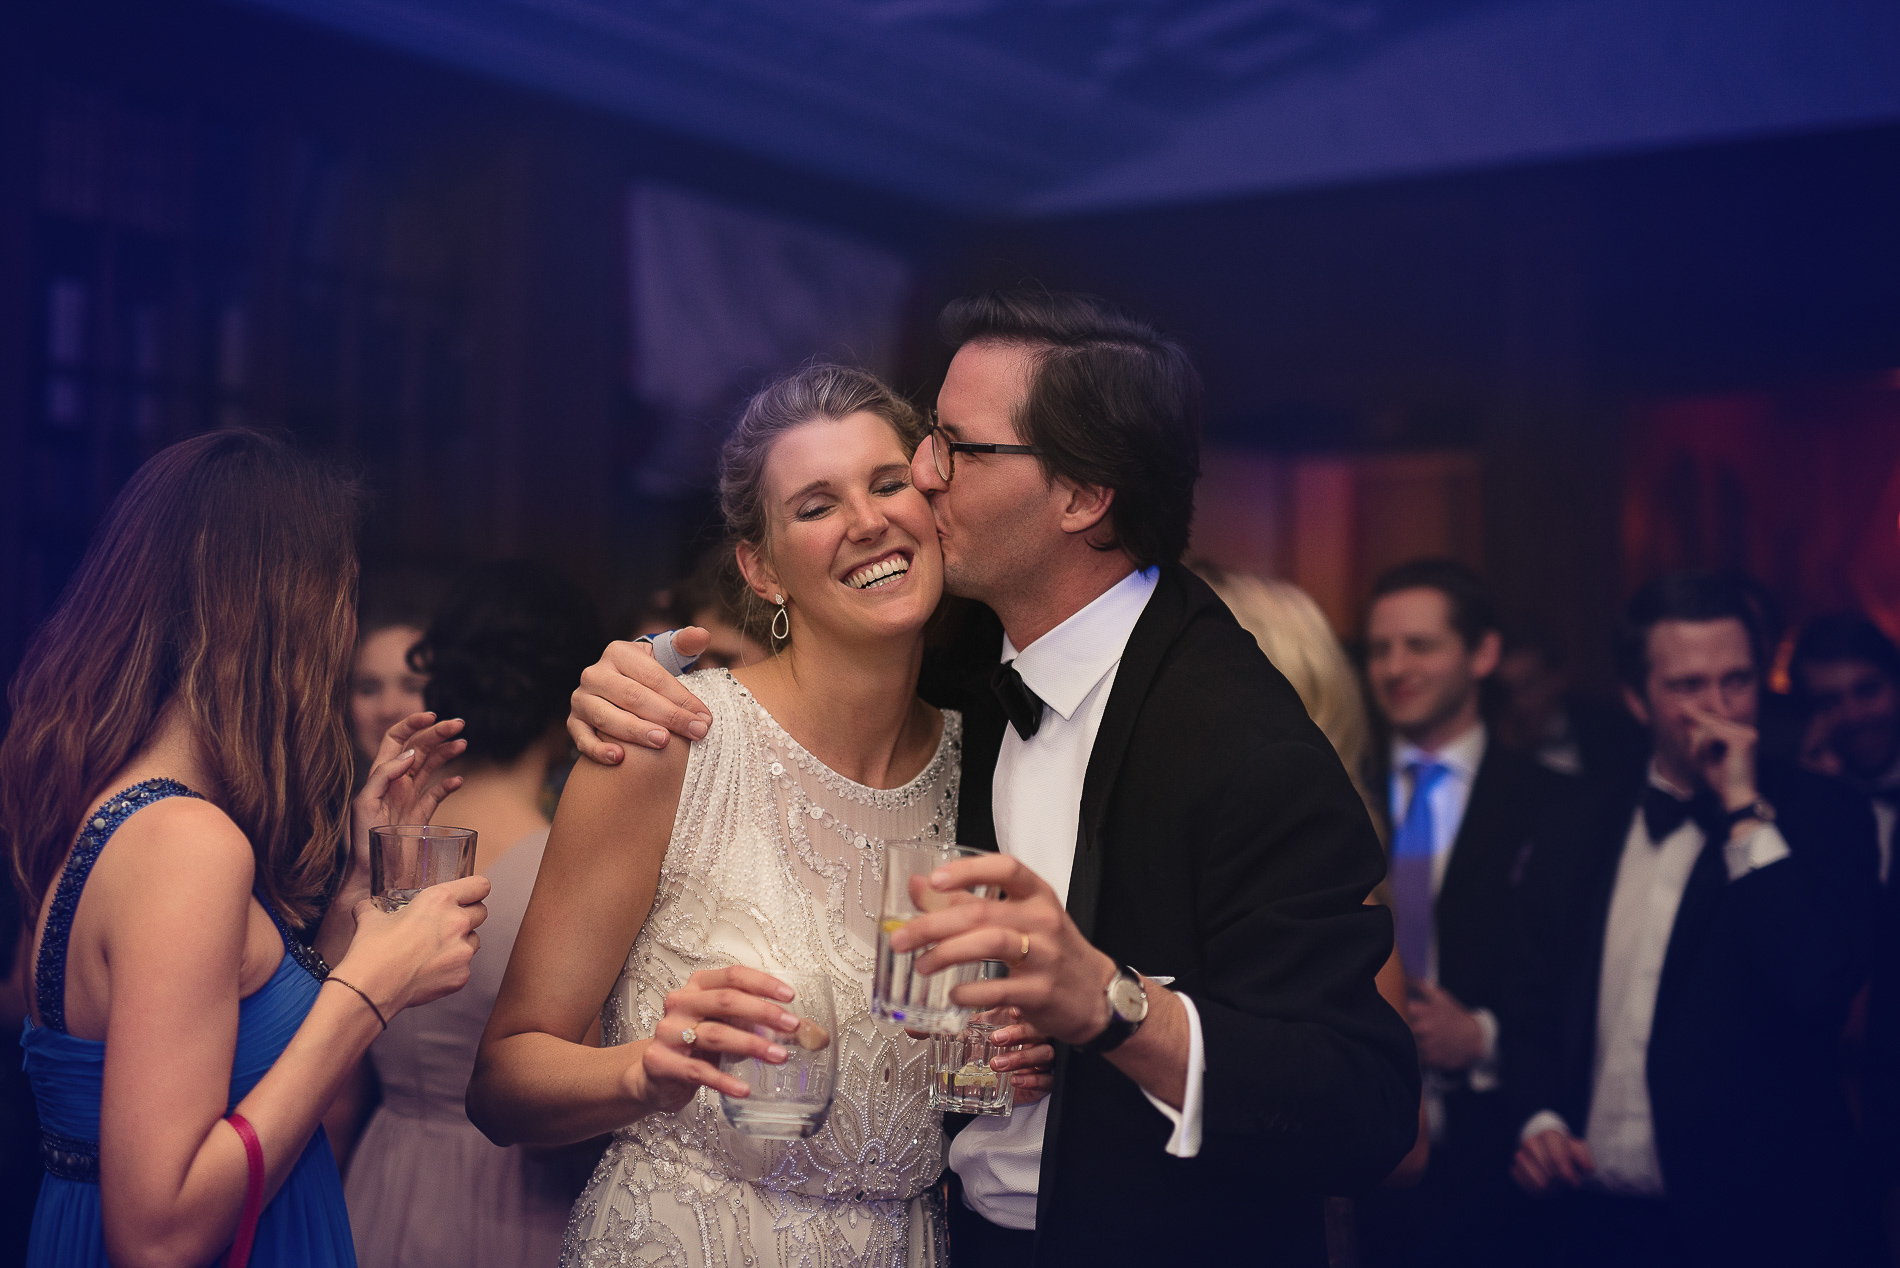 svatební fotograf - svatba v Rakousku